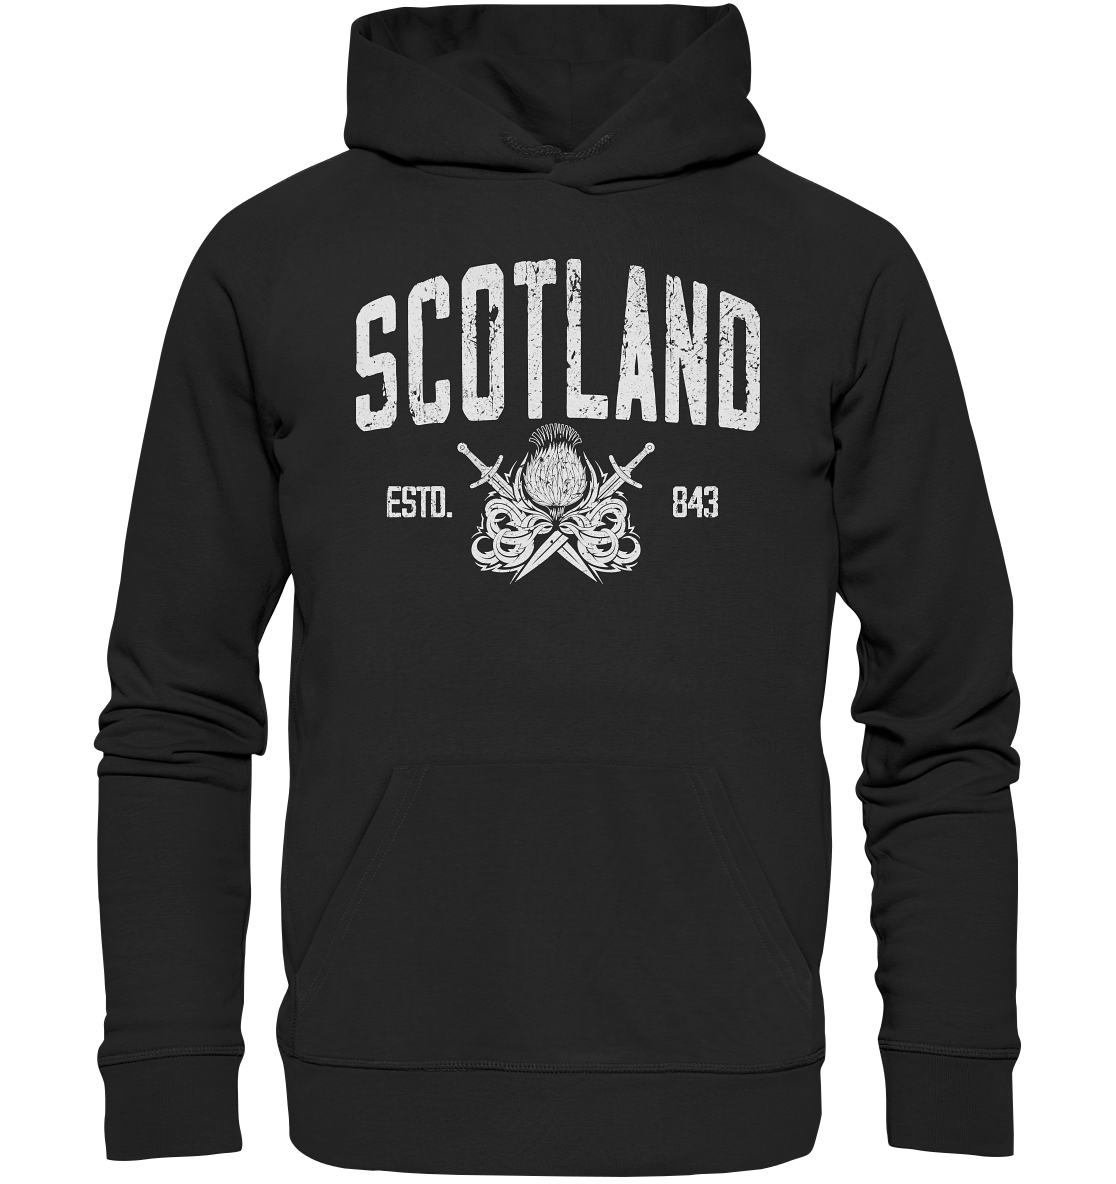 Scotland "Estd. 843" - Premium Unisex Hoodie